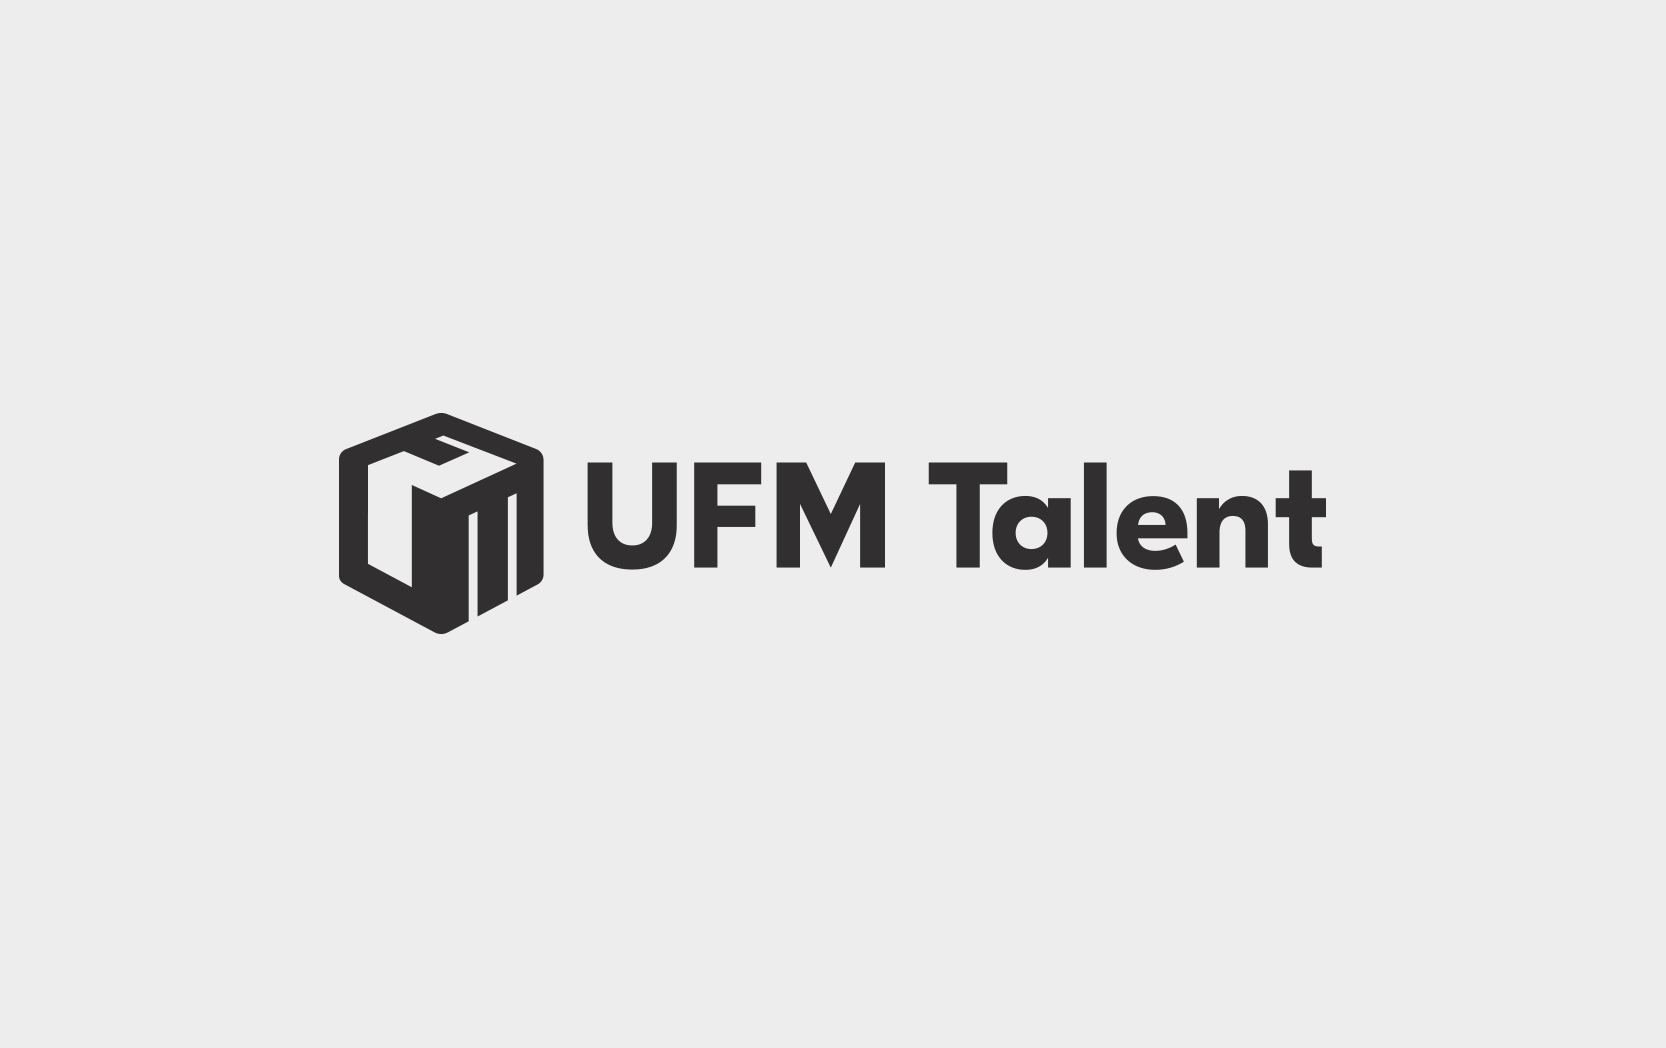 UFM Talent